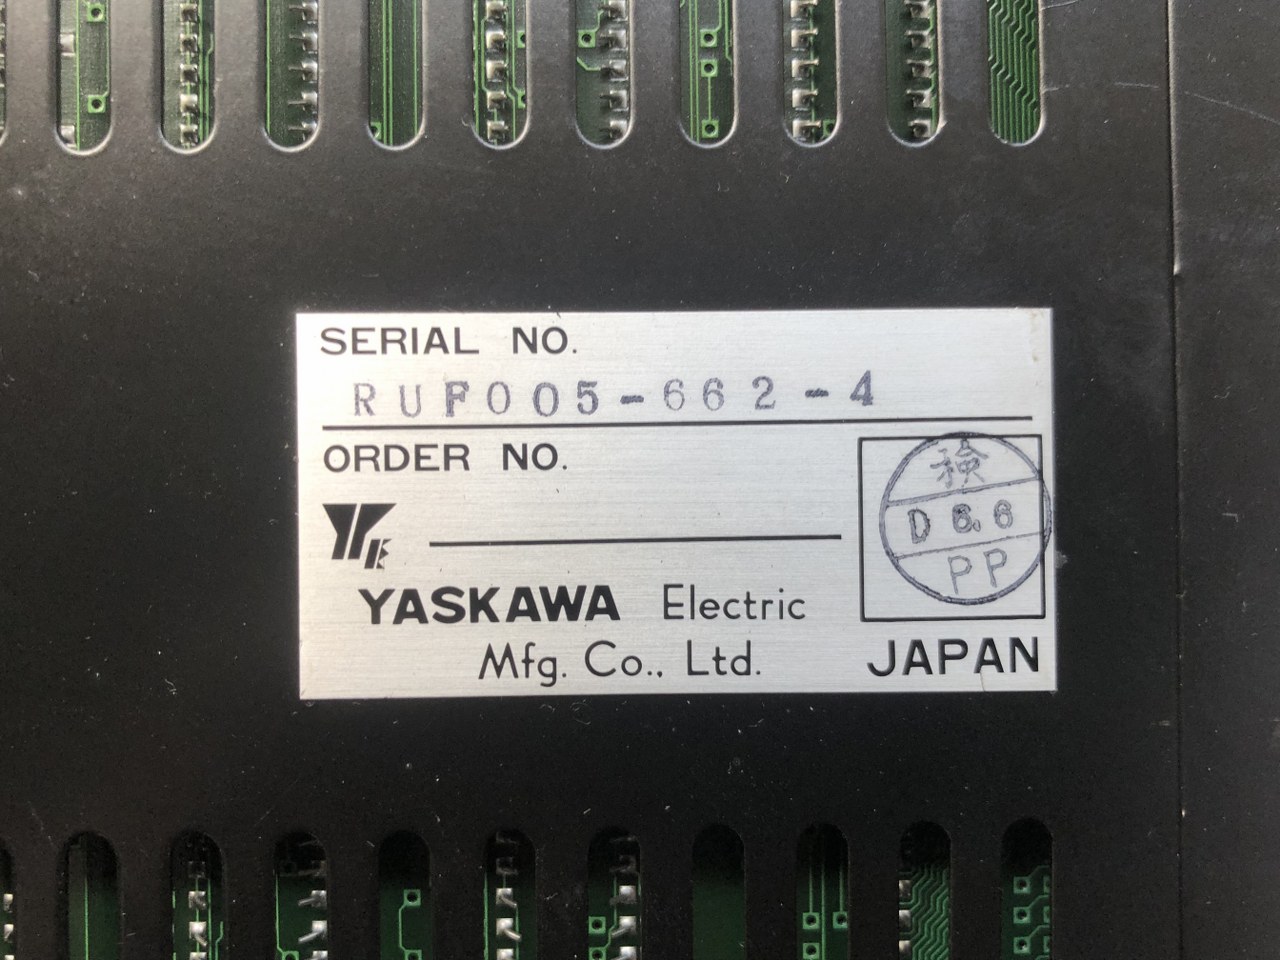 中古お買い得品・1山販売等 【motionpack-100】JEFMC 安川電機 YASKAWA ELECTRIC